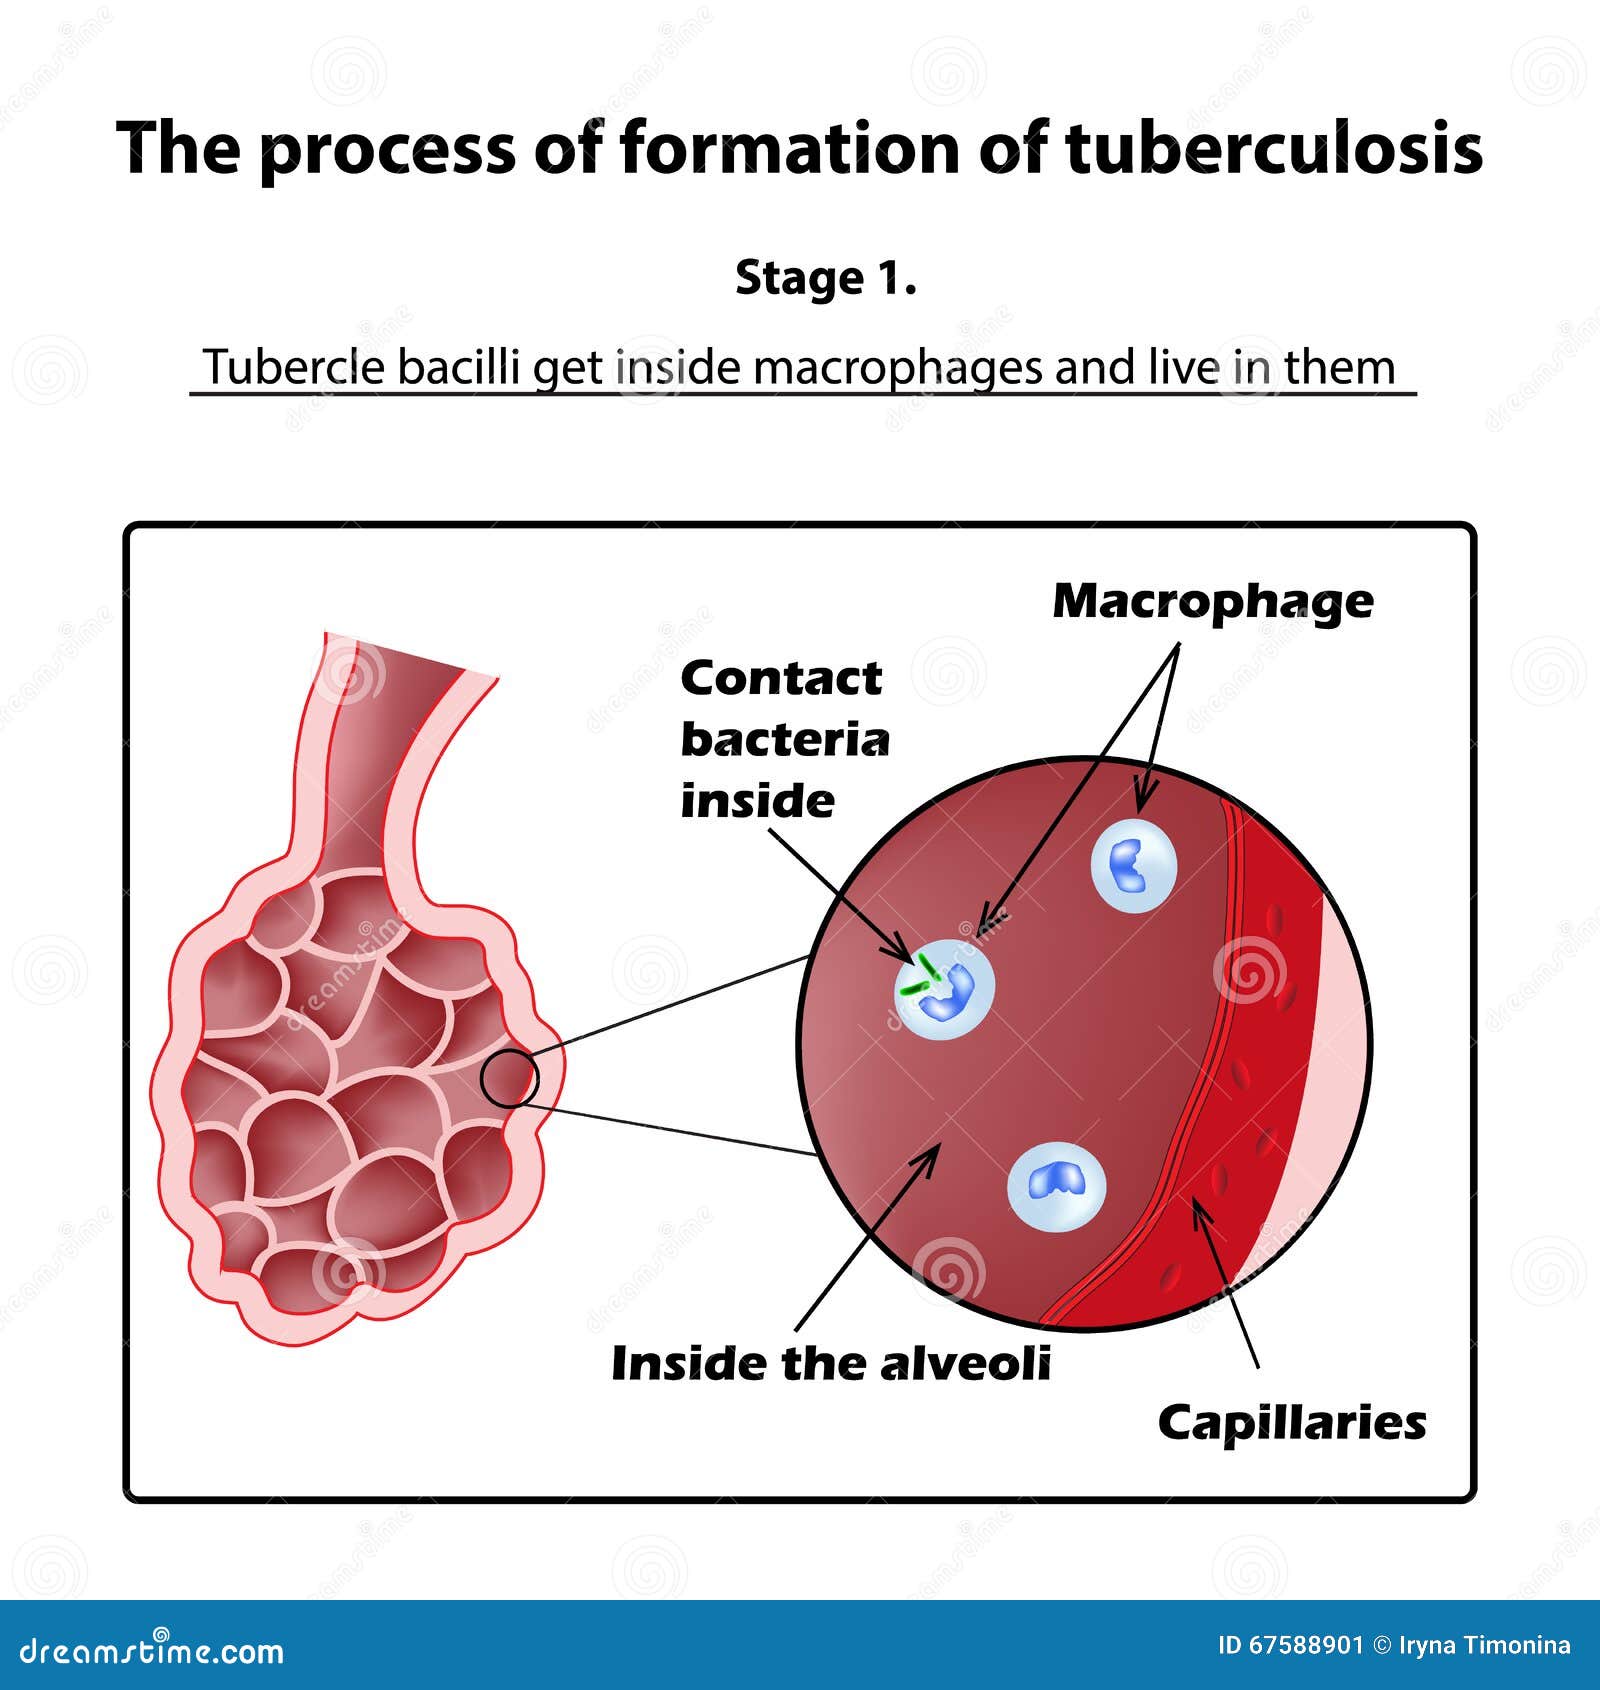 A tubercle bacillus parazita